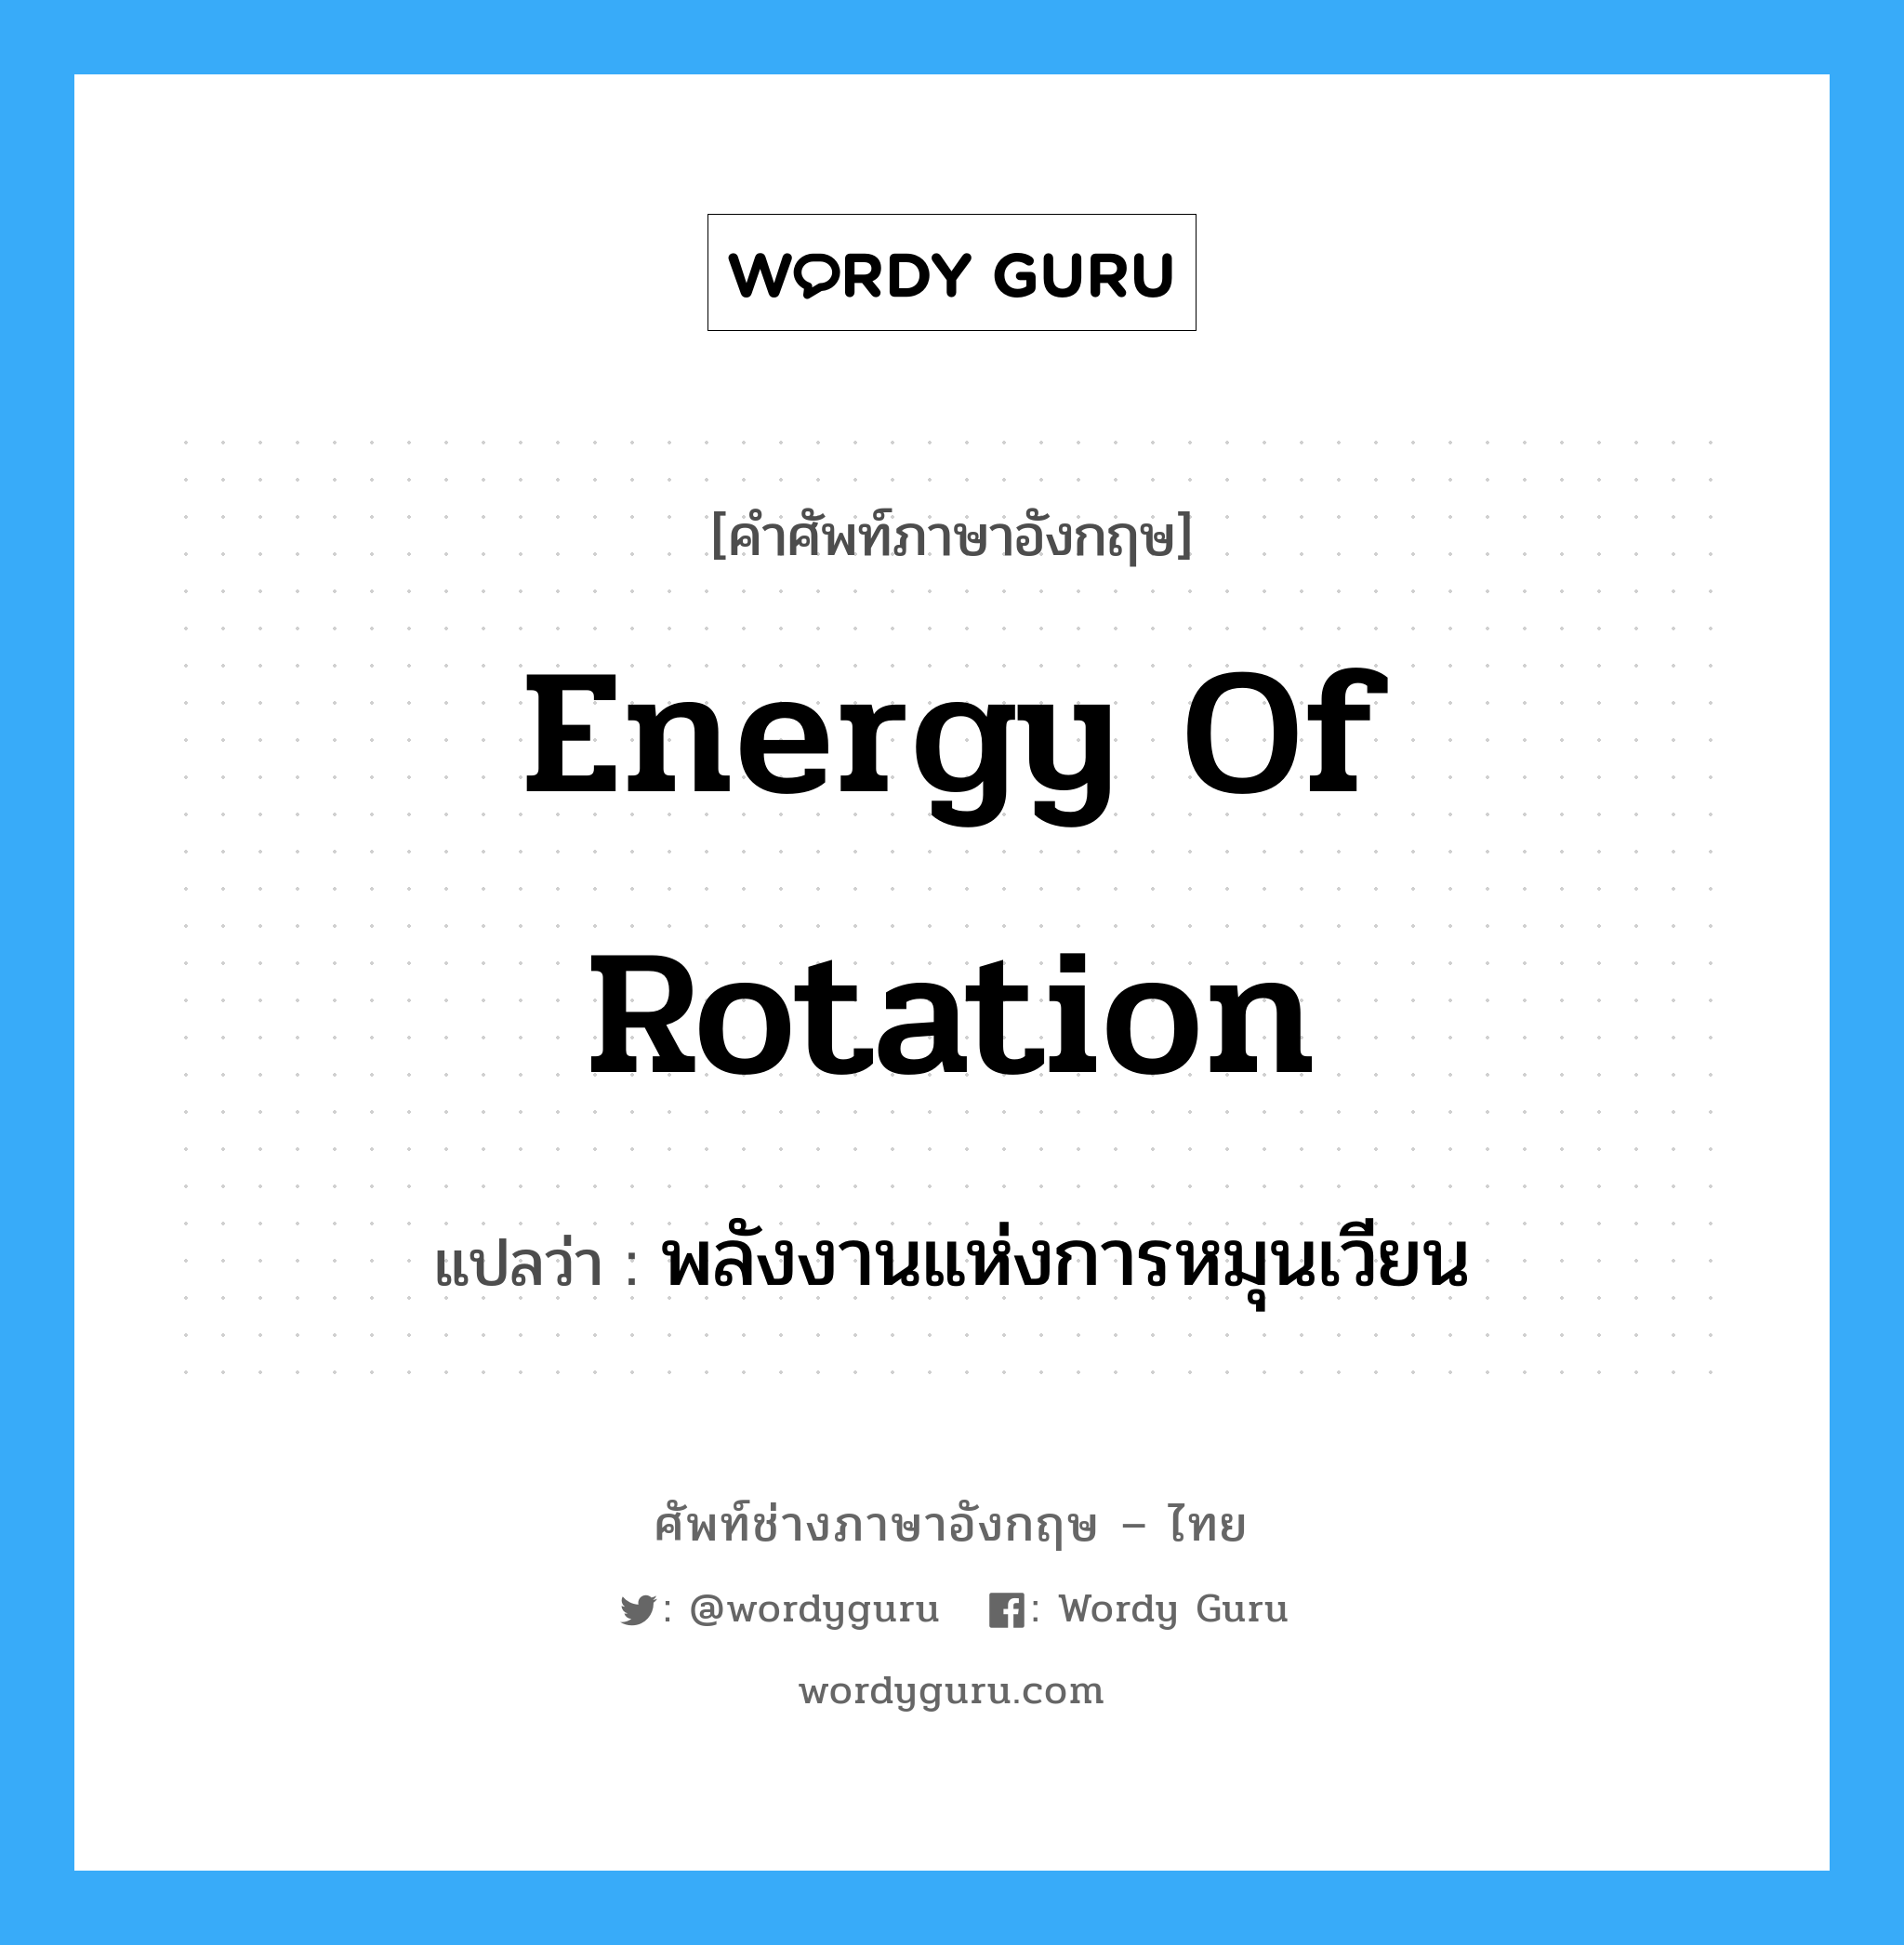 energy of rotation แปลว่า?, คำศัพท์ช่างภาษาอังกฤษ - ไทย energy of rotation คำศัพท์ภาษาอังกฤษ energy of rotation แปลว่า พลังงานแห่งการหมุนเวียน